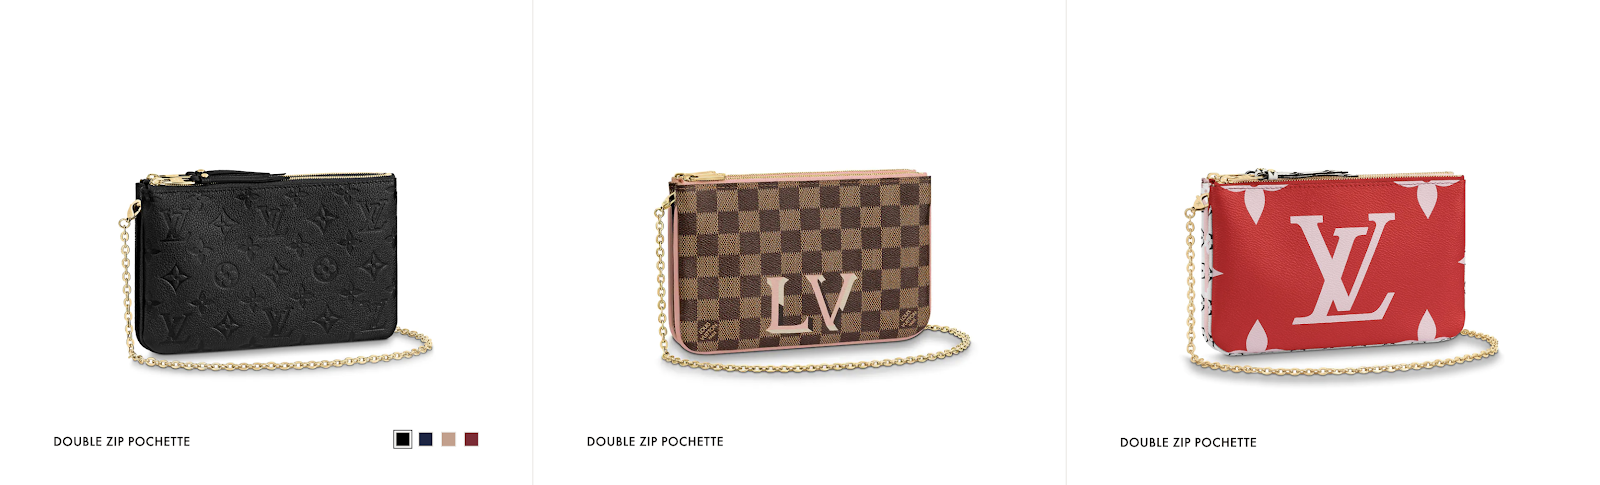 Louis Vuitton Double Zip Pochette Monogram Review 